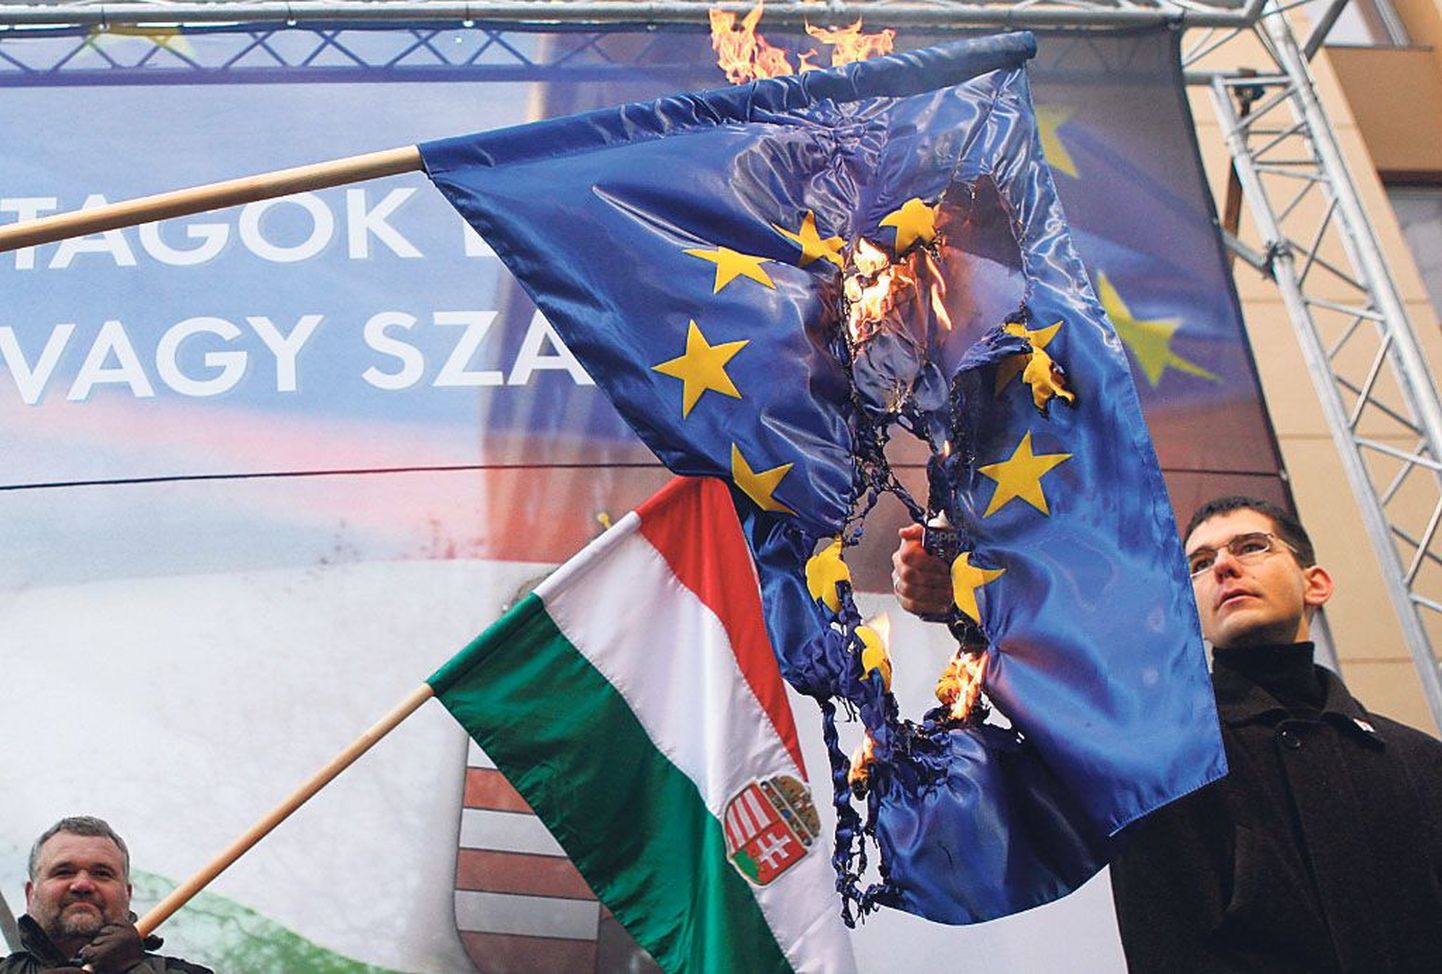 Ungari valitsuse ja Euroopa Liidu seisukohad on endiselt tugevasti erinevad. Madjarite parempoolsed erakonnad on silmapaistvalt ELi-kriitilised.